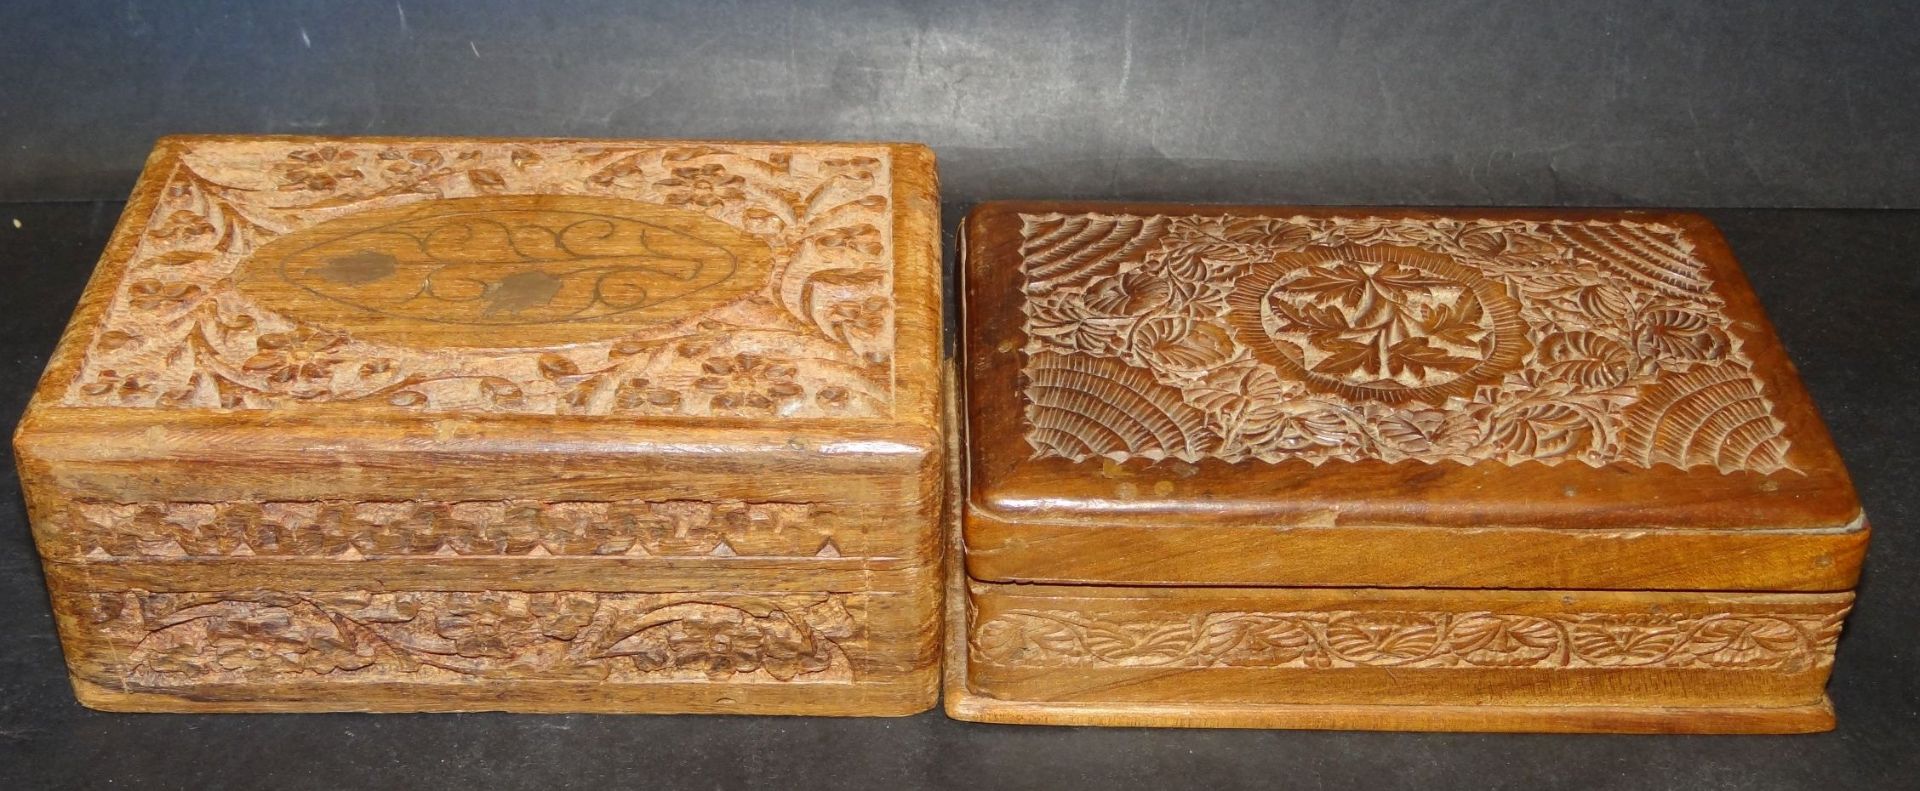 2x asiatische beschnitzte Holzkästchen, ca. 10x15 c